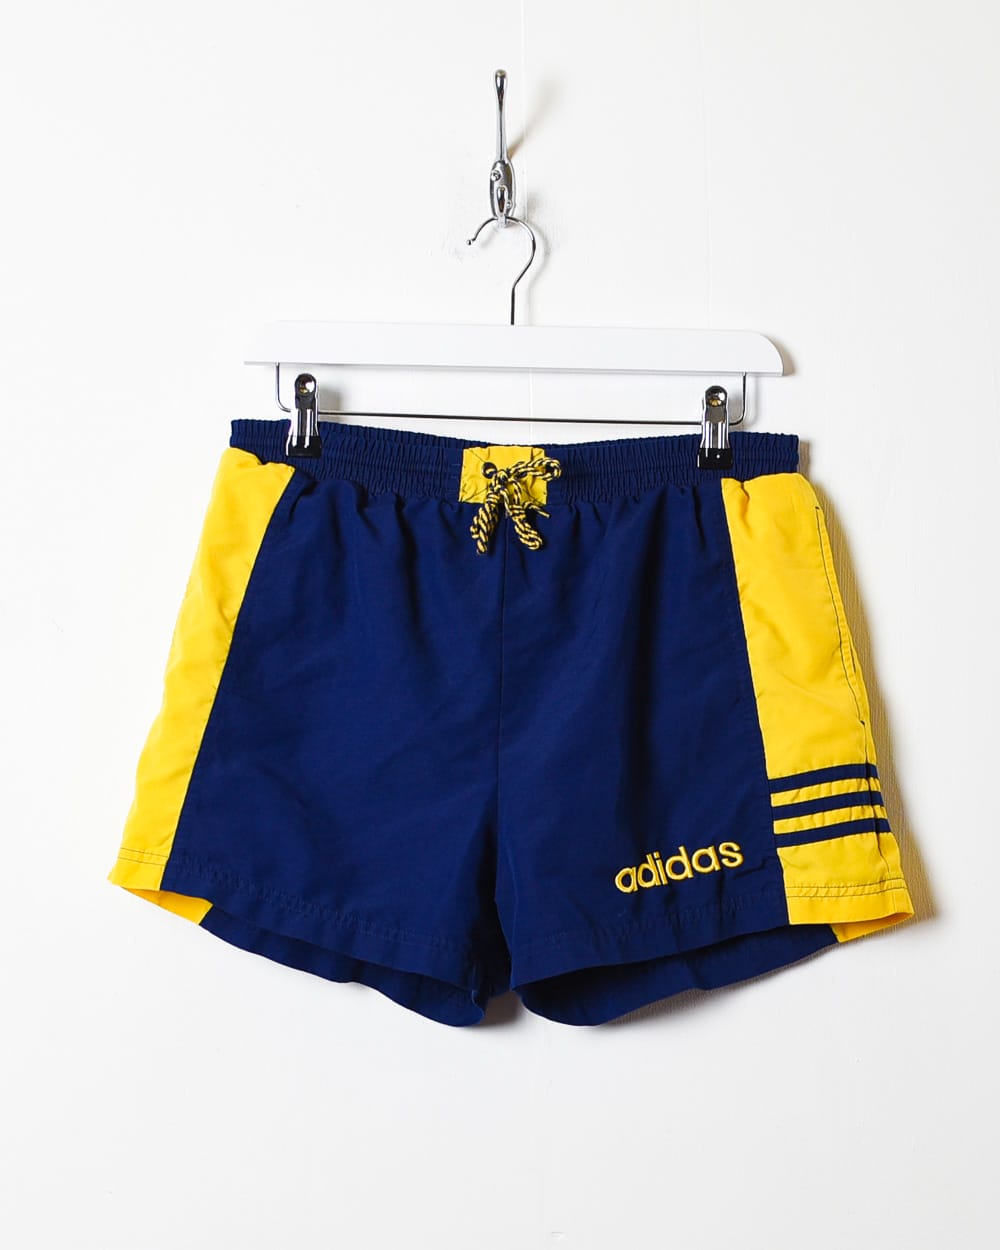 Navy Adidas Mesh Shorts - Medium